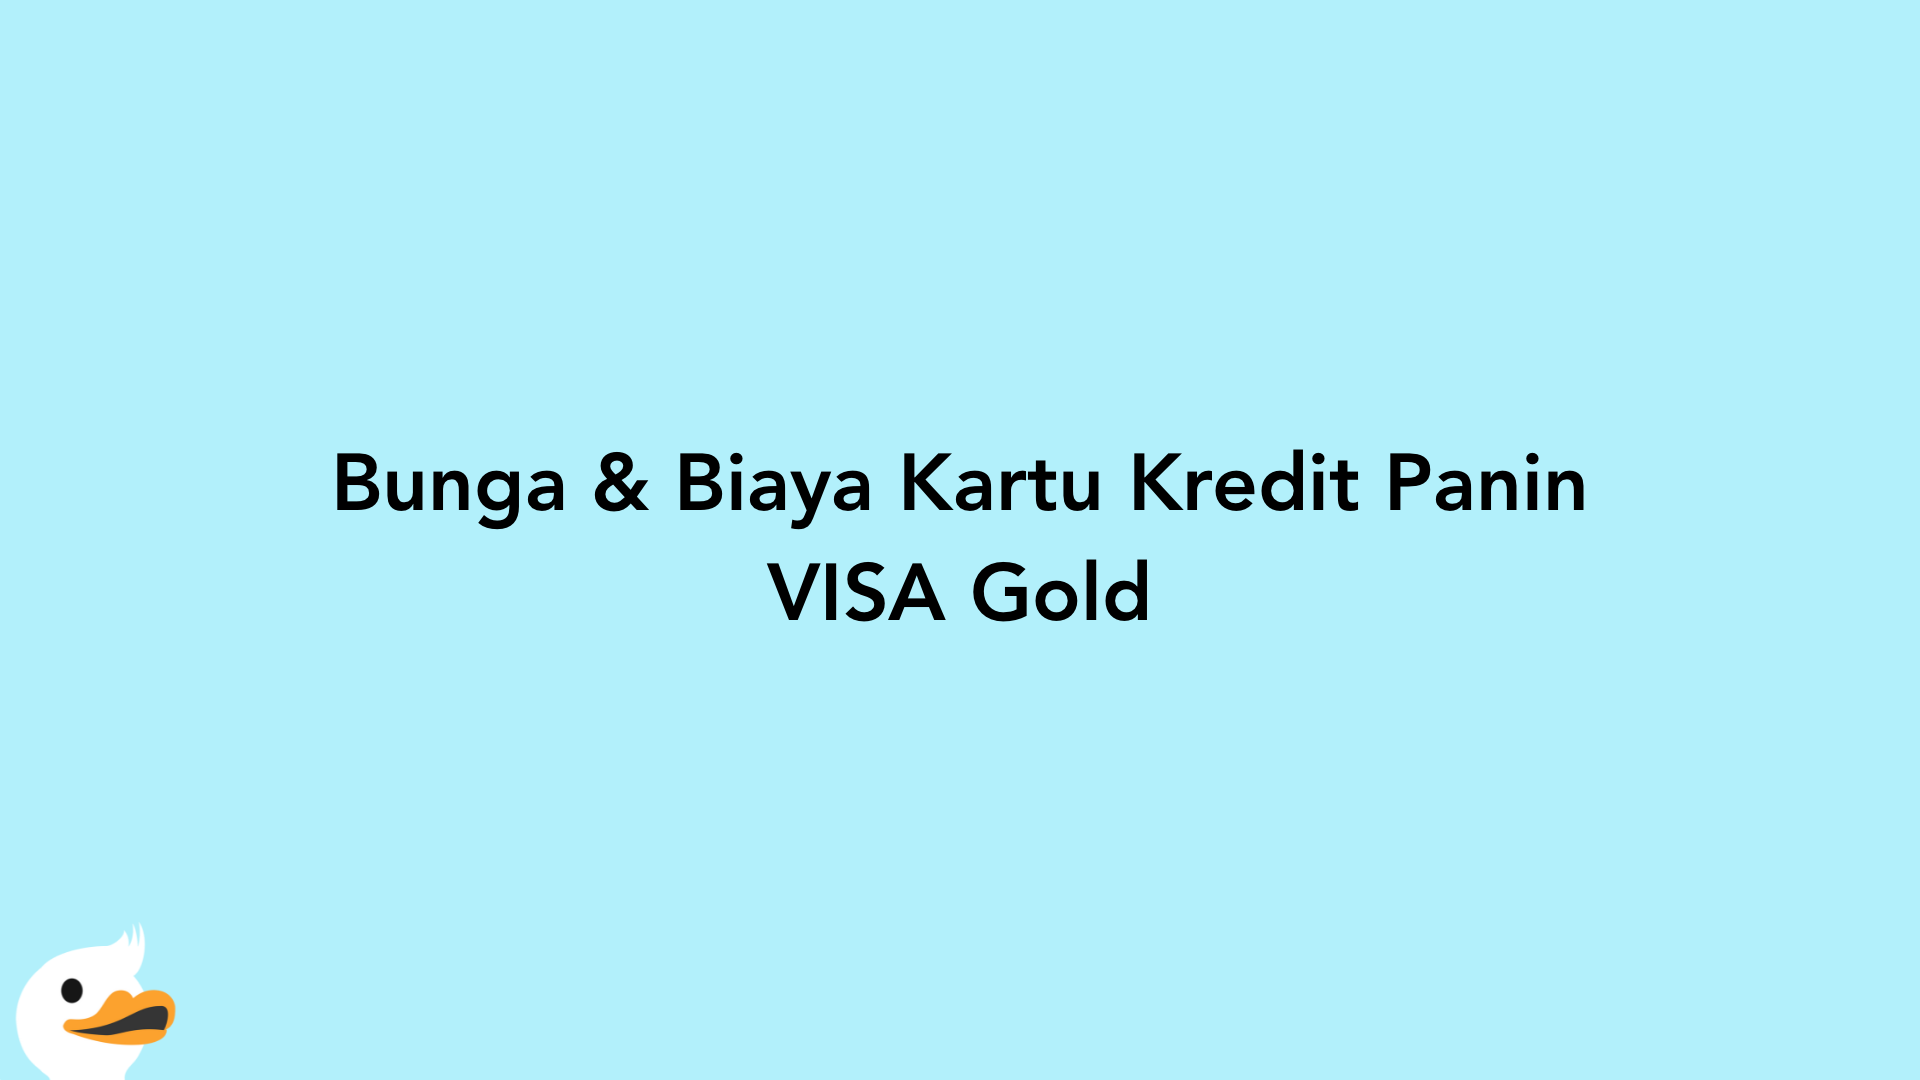 Bunga & Biaya Kartu Kredit Panin VISA Gold